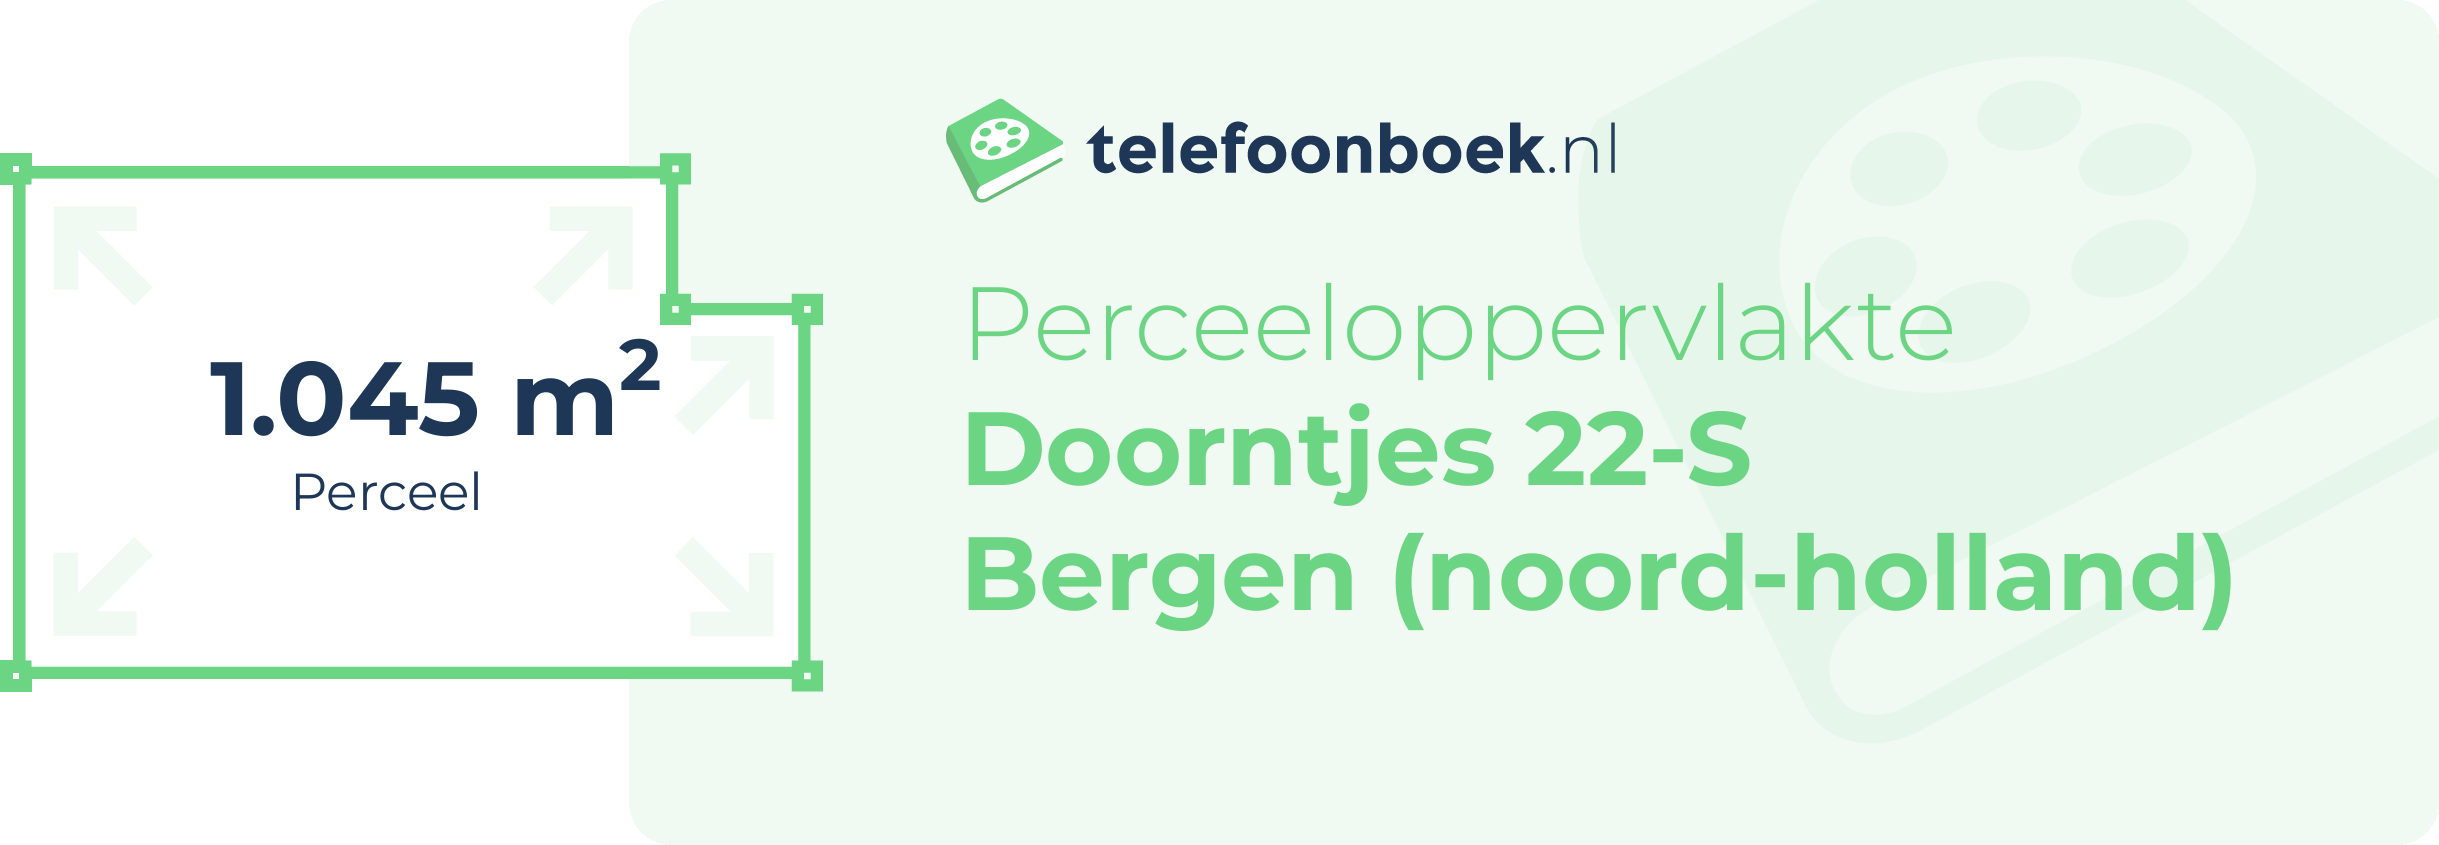 Perceeloppervlakte Doorntjes 22-S Bergen (Noord-Holland)